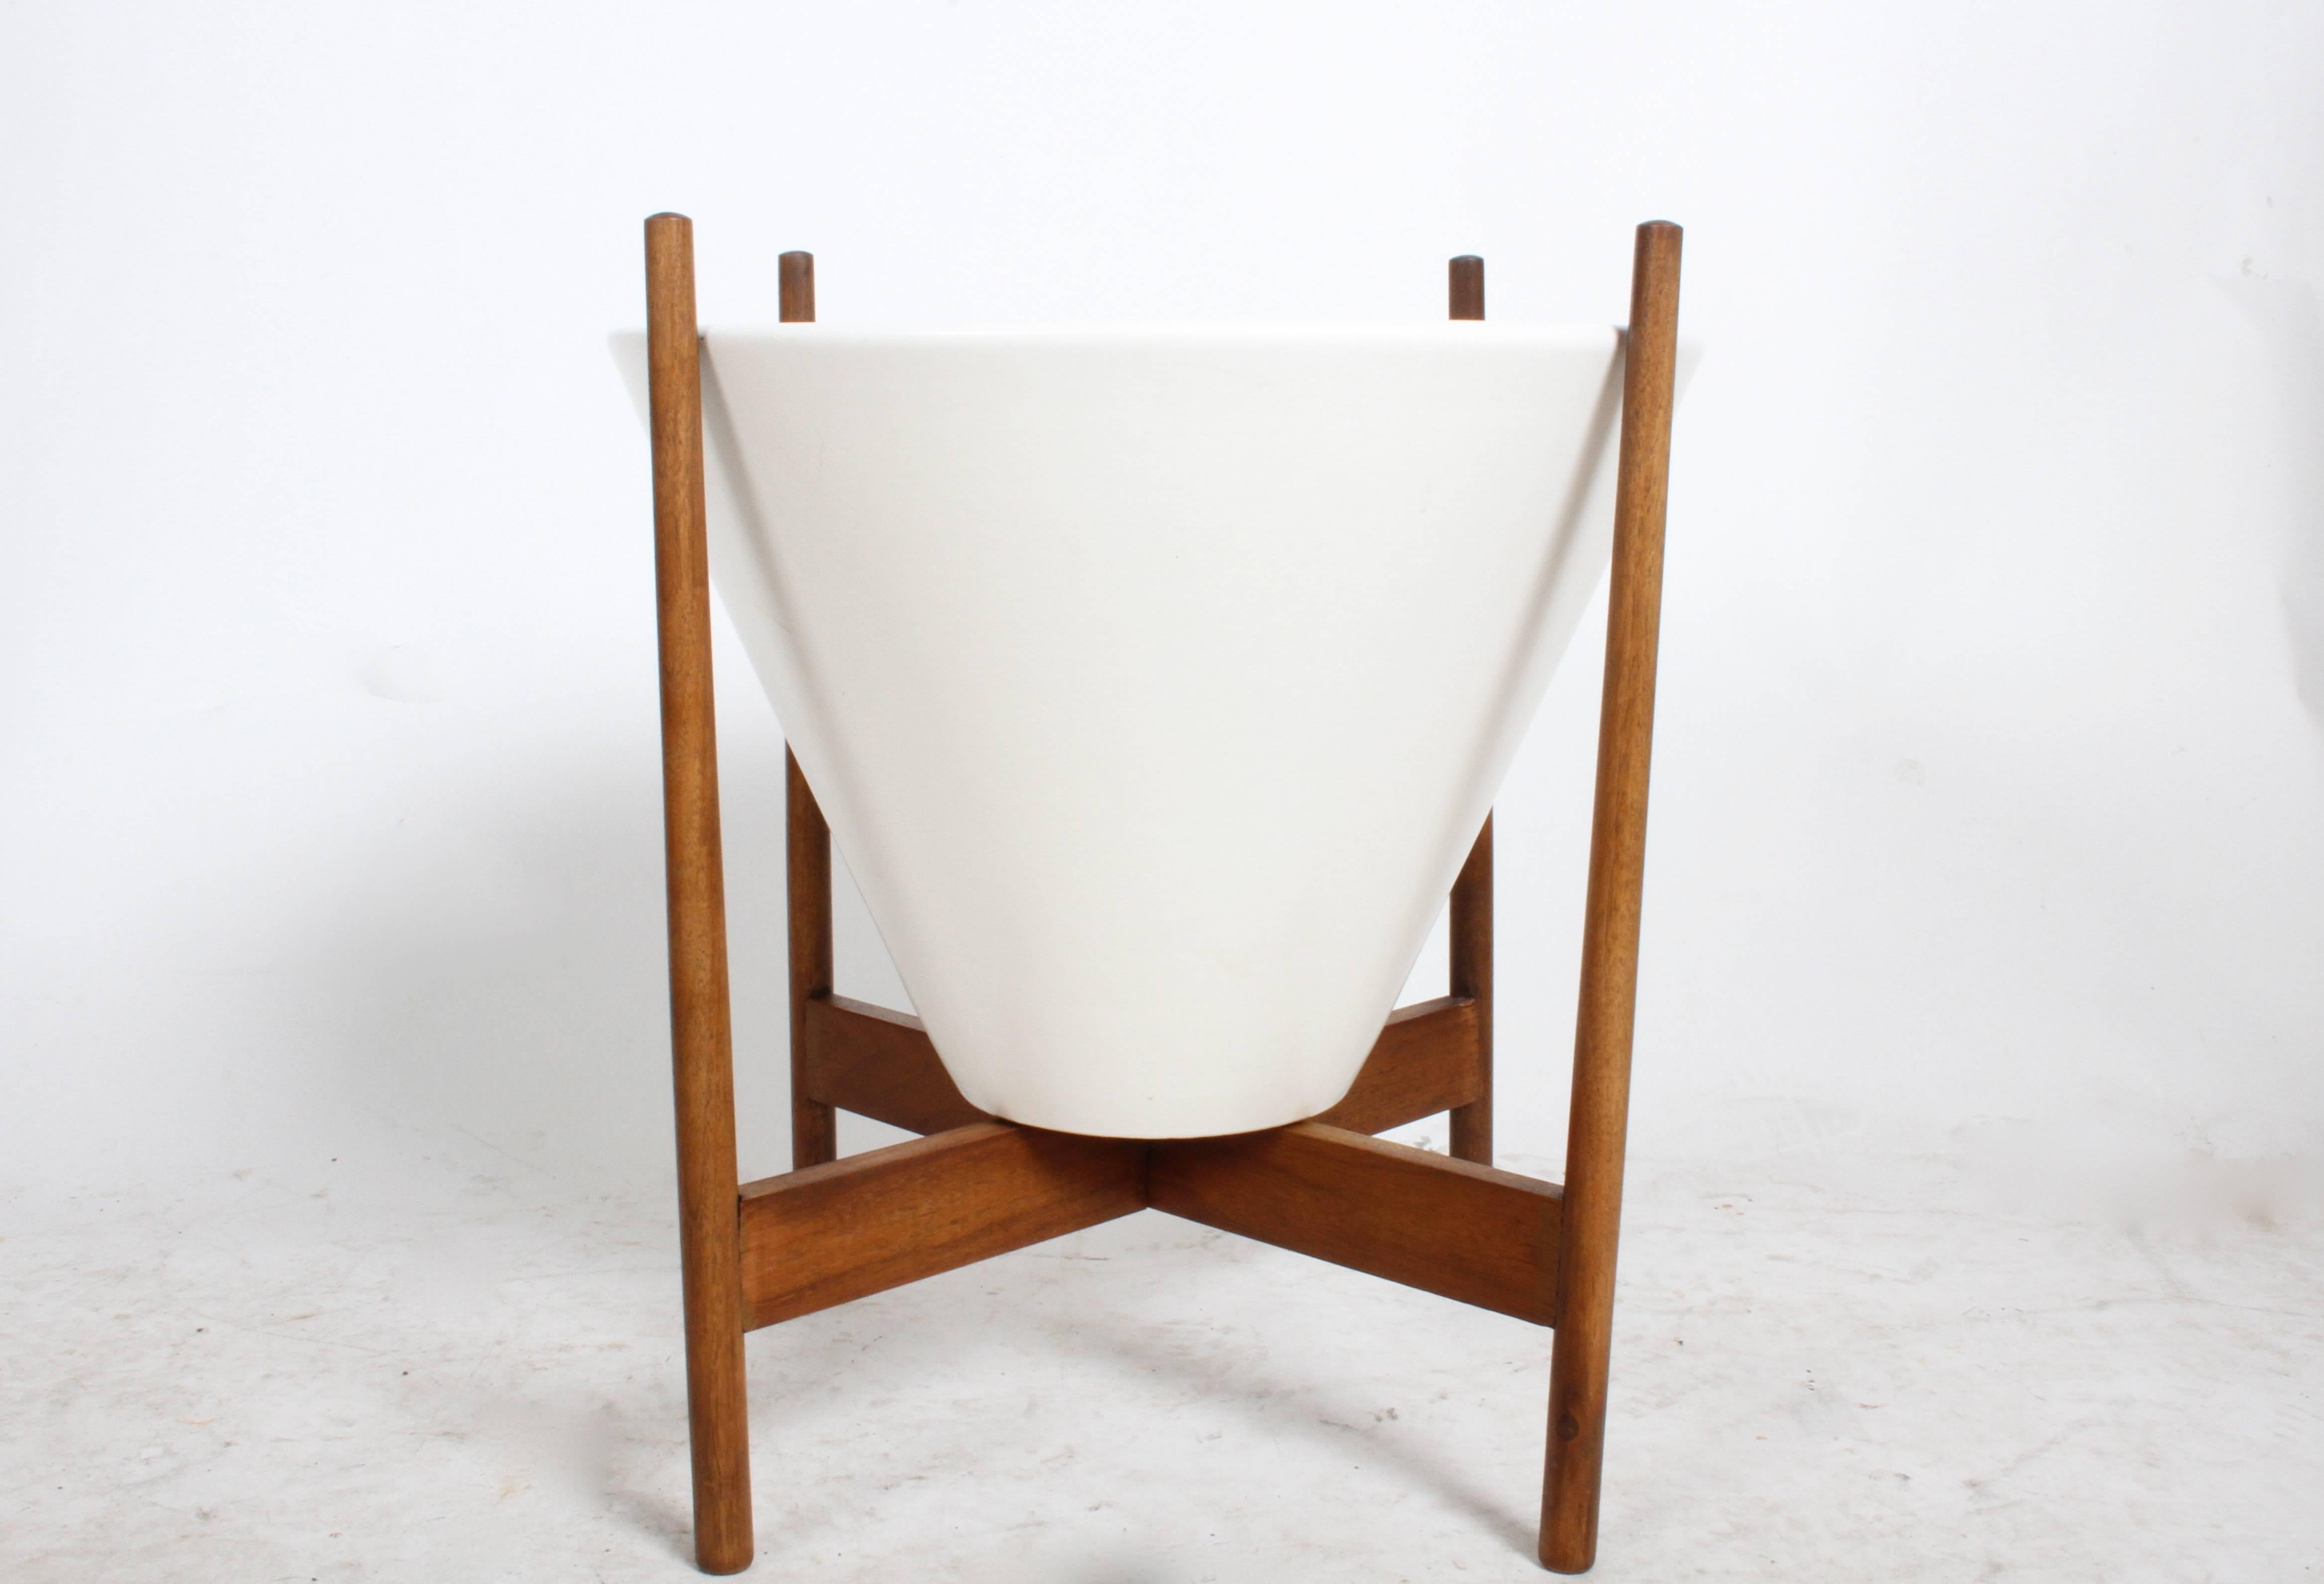 American Lagardo Tackett Ceramic Planter Model S-04 for Architectural Pottery circa 1960s